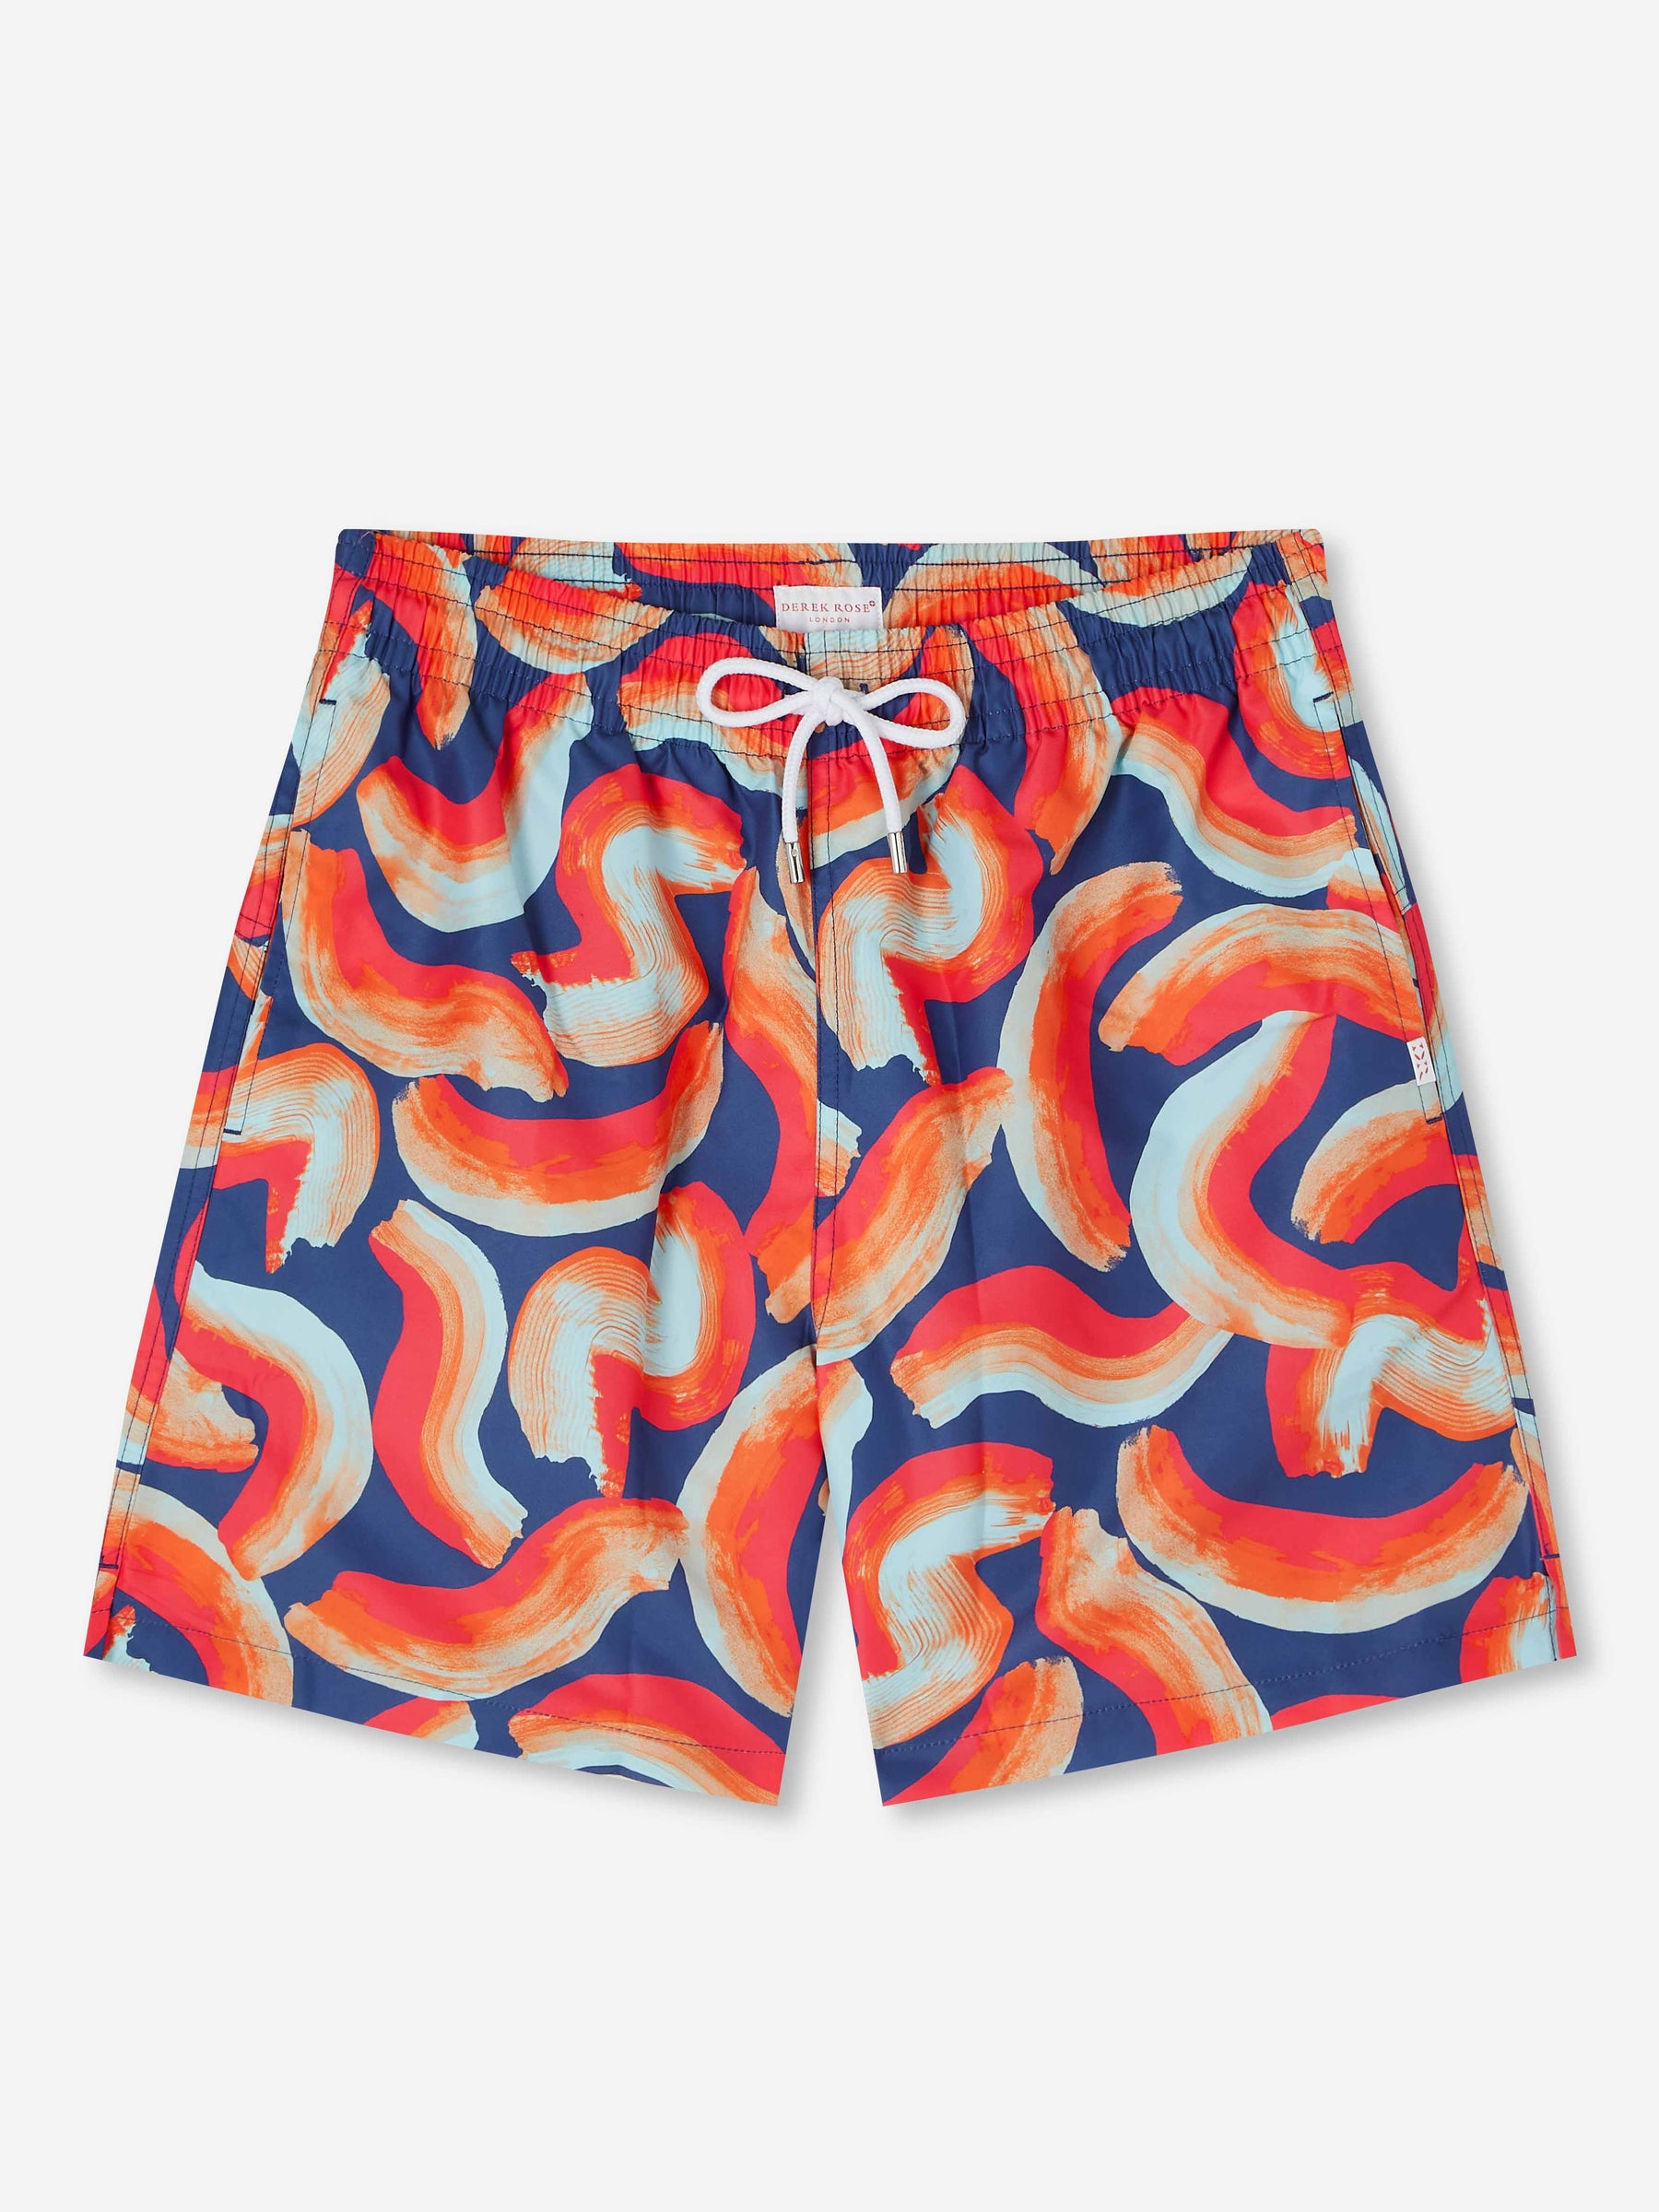 Men's Swim Shorts Maui 46 Multi